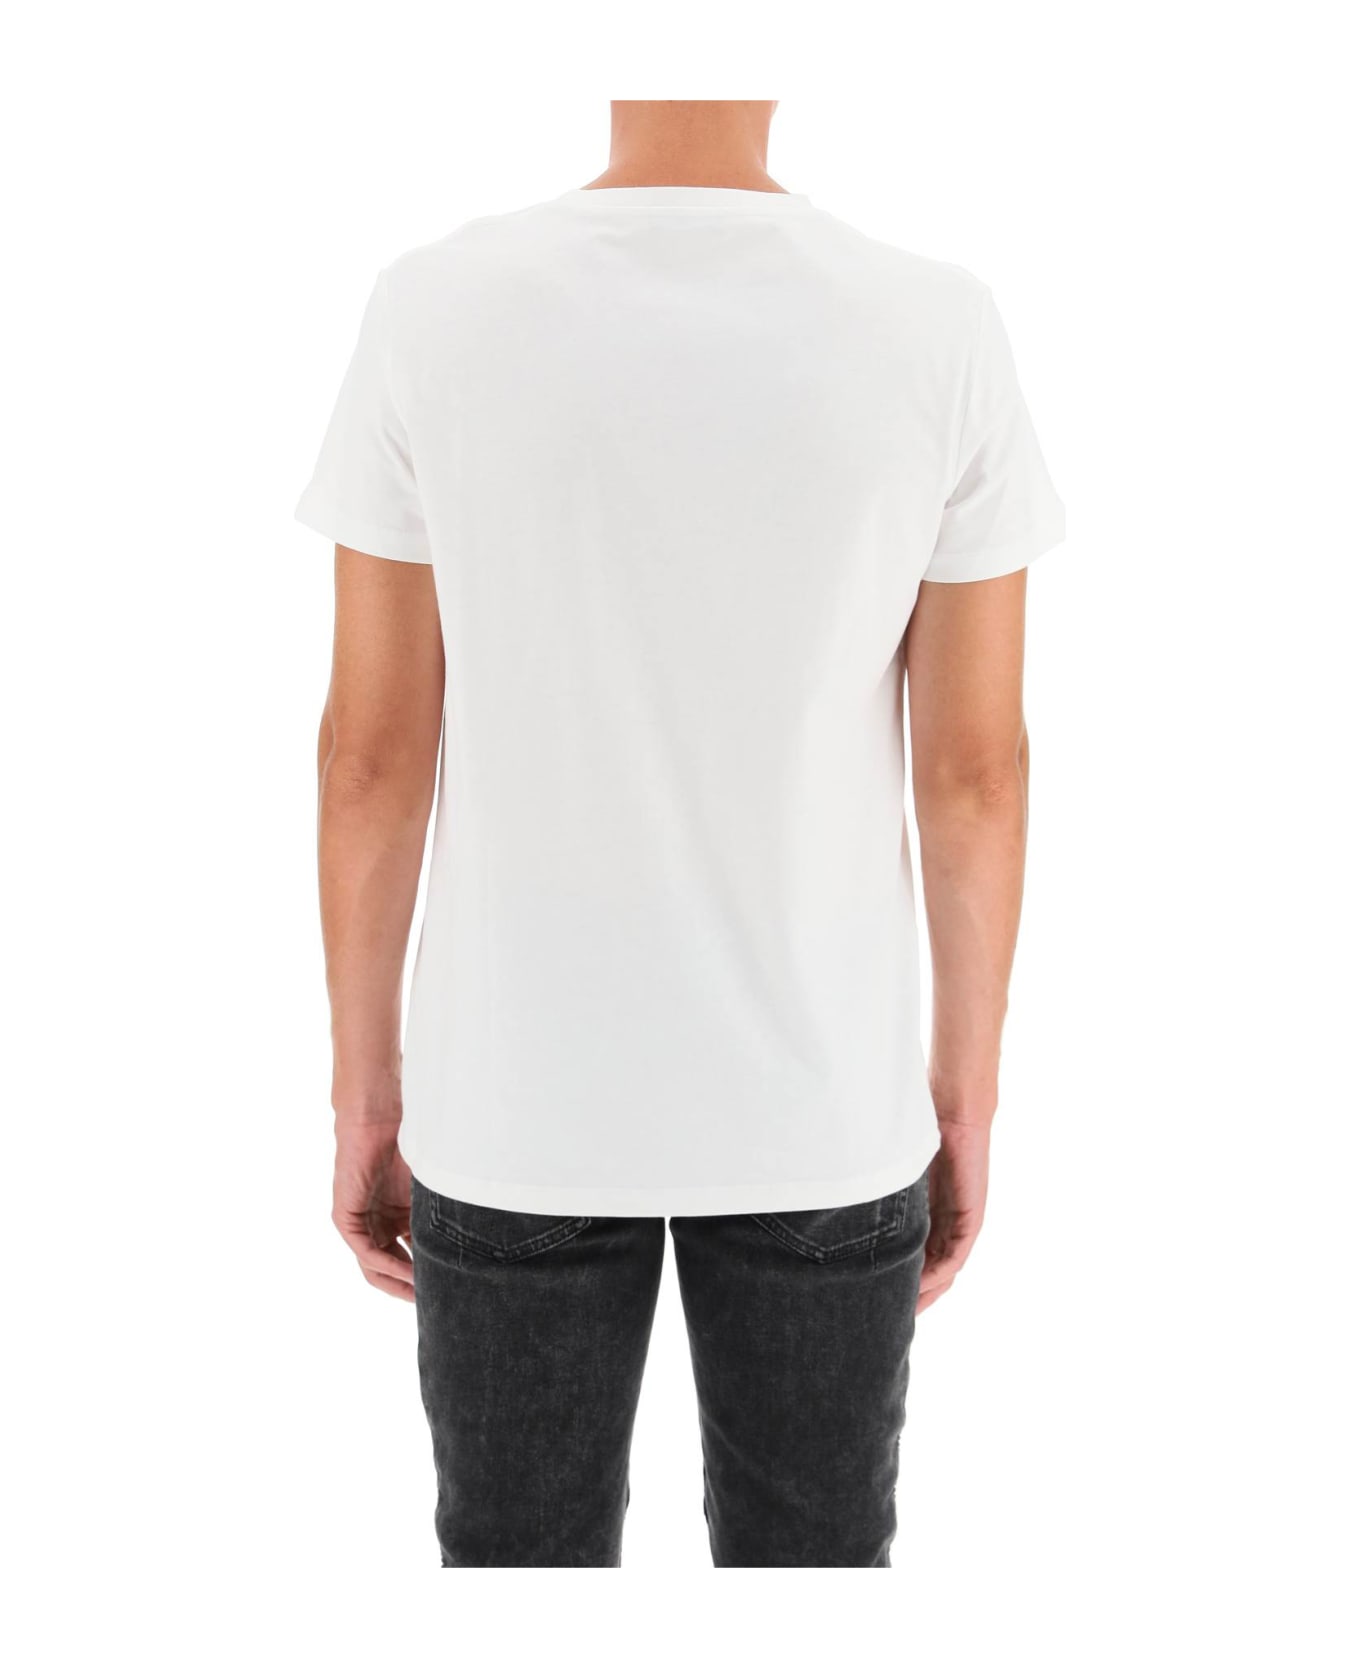 Balmain Logo Print T-shirt - BLANC NOIR (White) シャツ